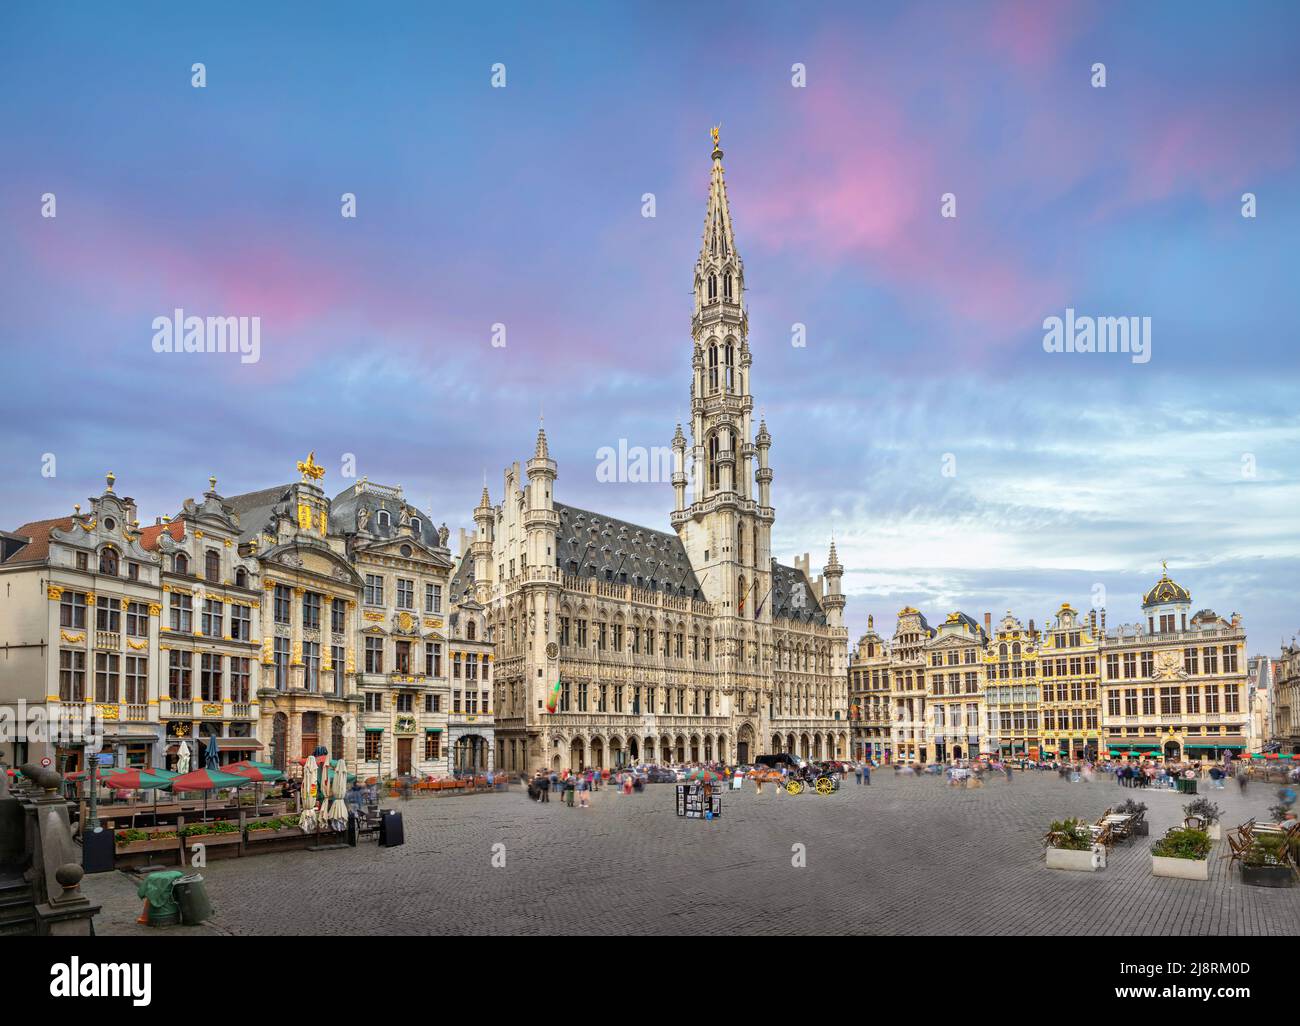 Bruselas, Bélgica. Vista panorámica de la plaza Grand Place (Grote Markt) con el Ayuntamiento gótico Foto de stock